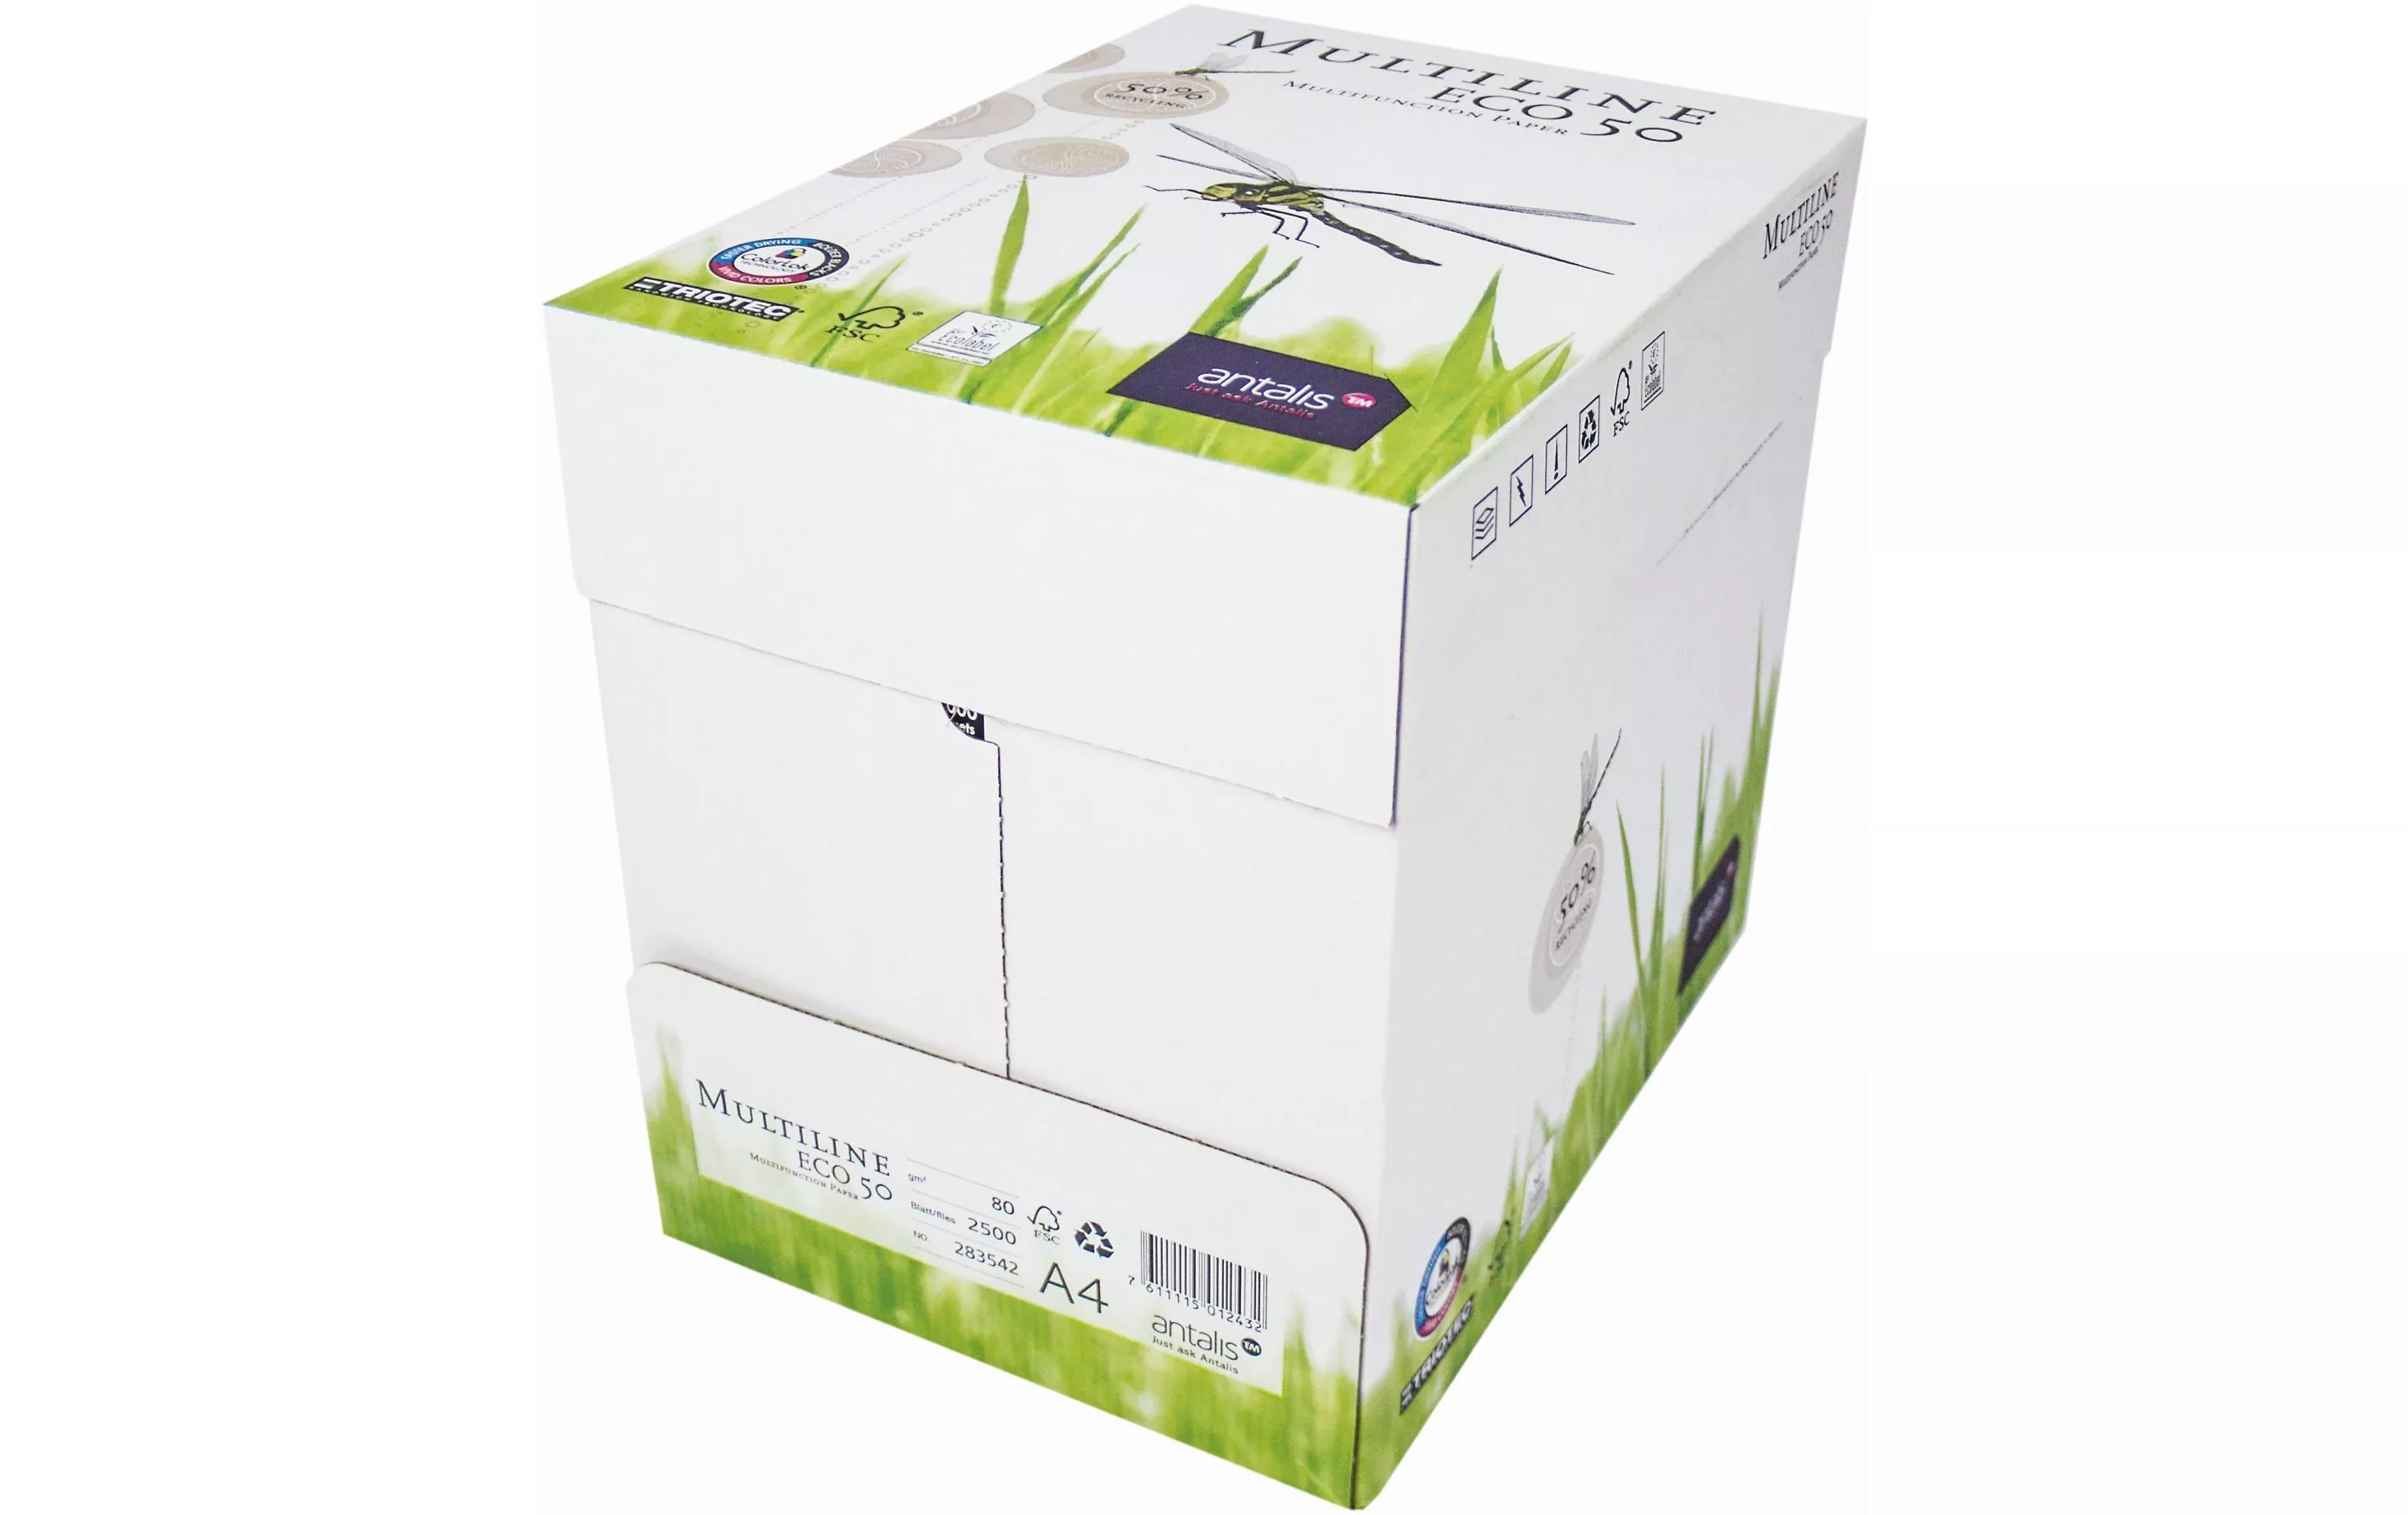 Kopierpapier Eco 50 Cleverbox A4, Weiss, 80 g/m²,2500 Blatt